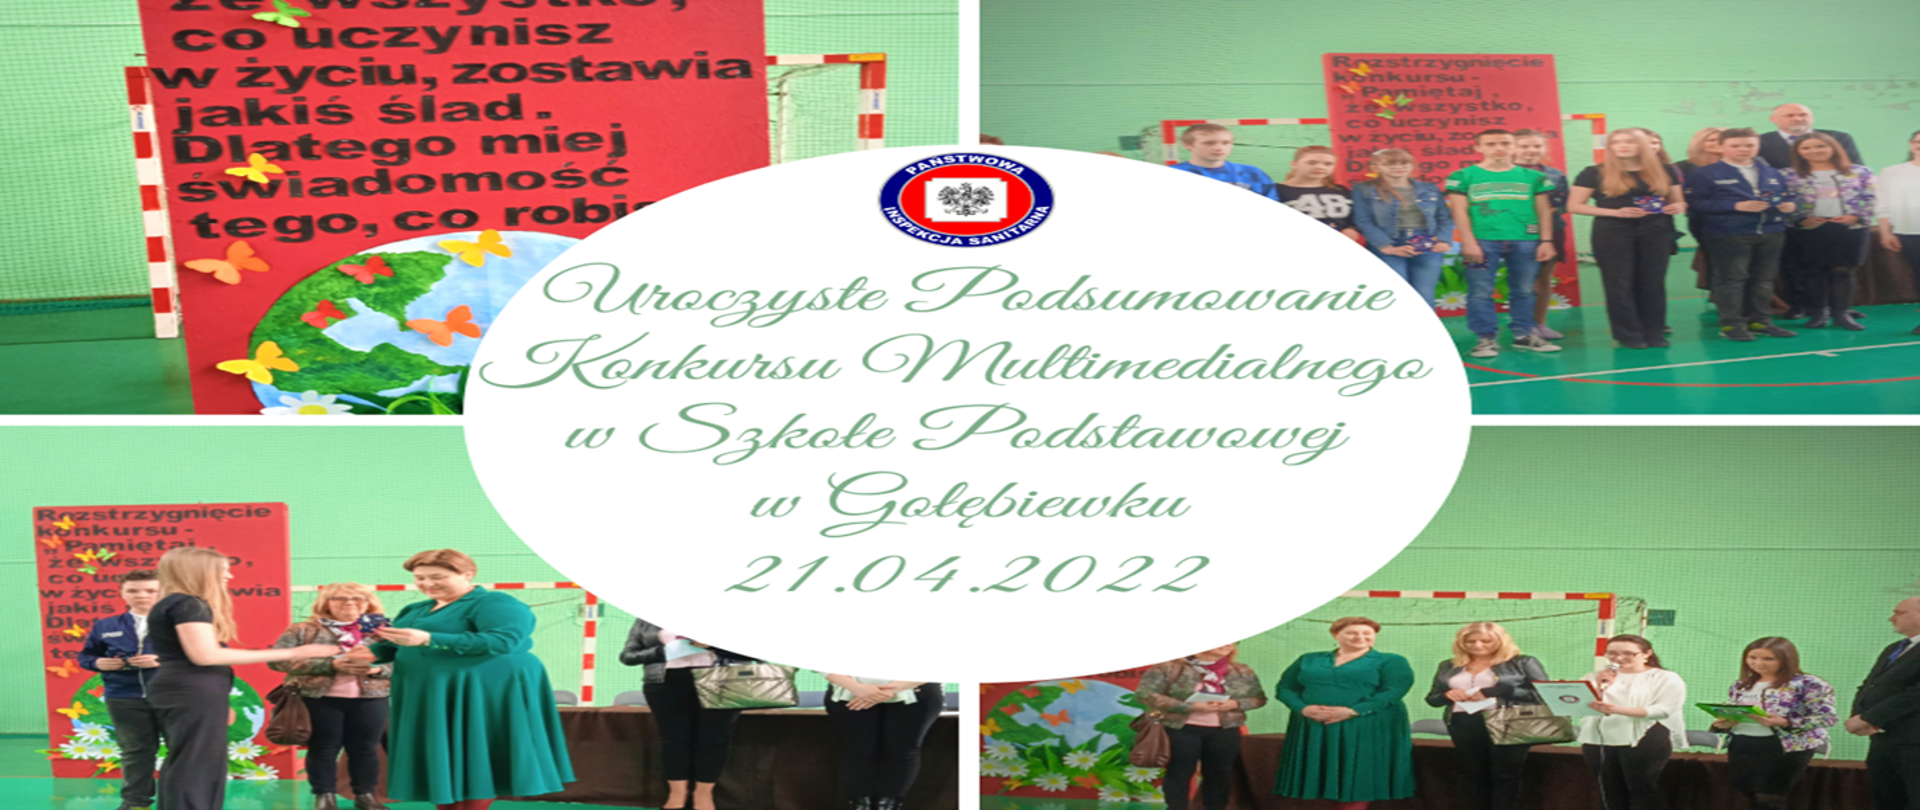 Kolarz zdjęć z wręczenia nagród laureatom konkursu multimedialnego w szkole podstawowej w Gołebiewku 21.04.2022